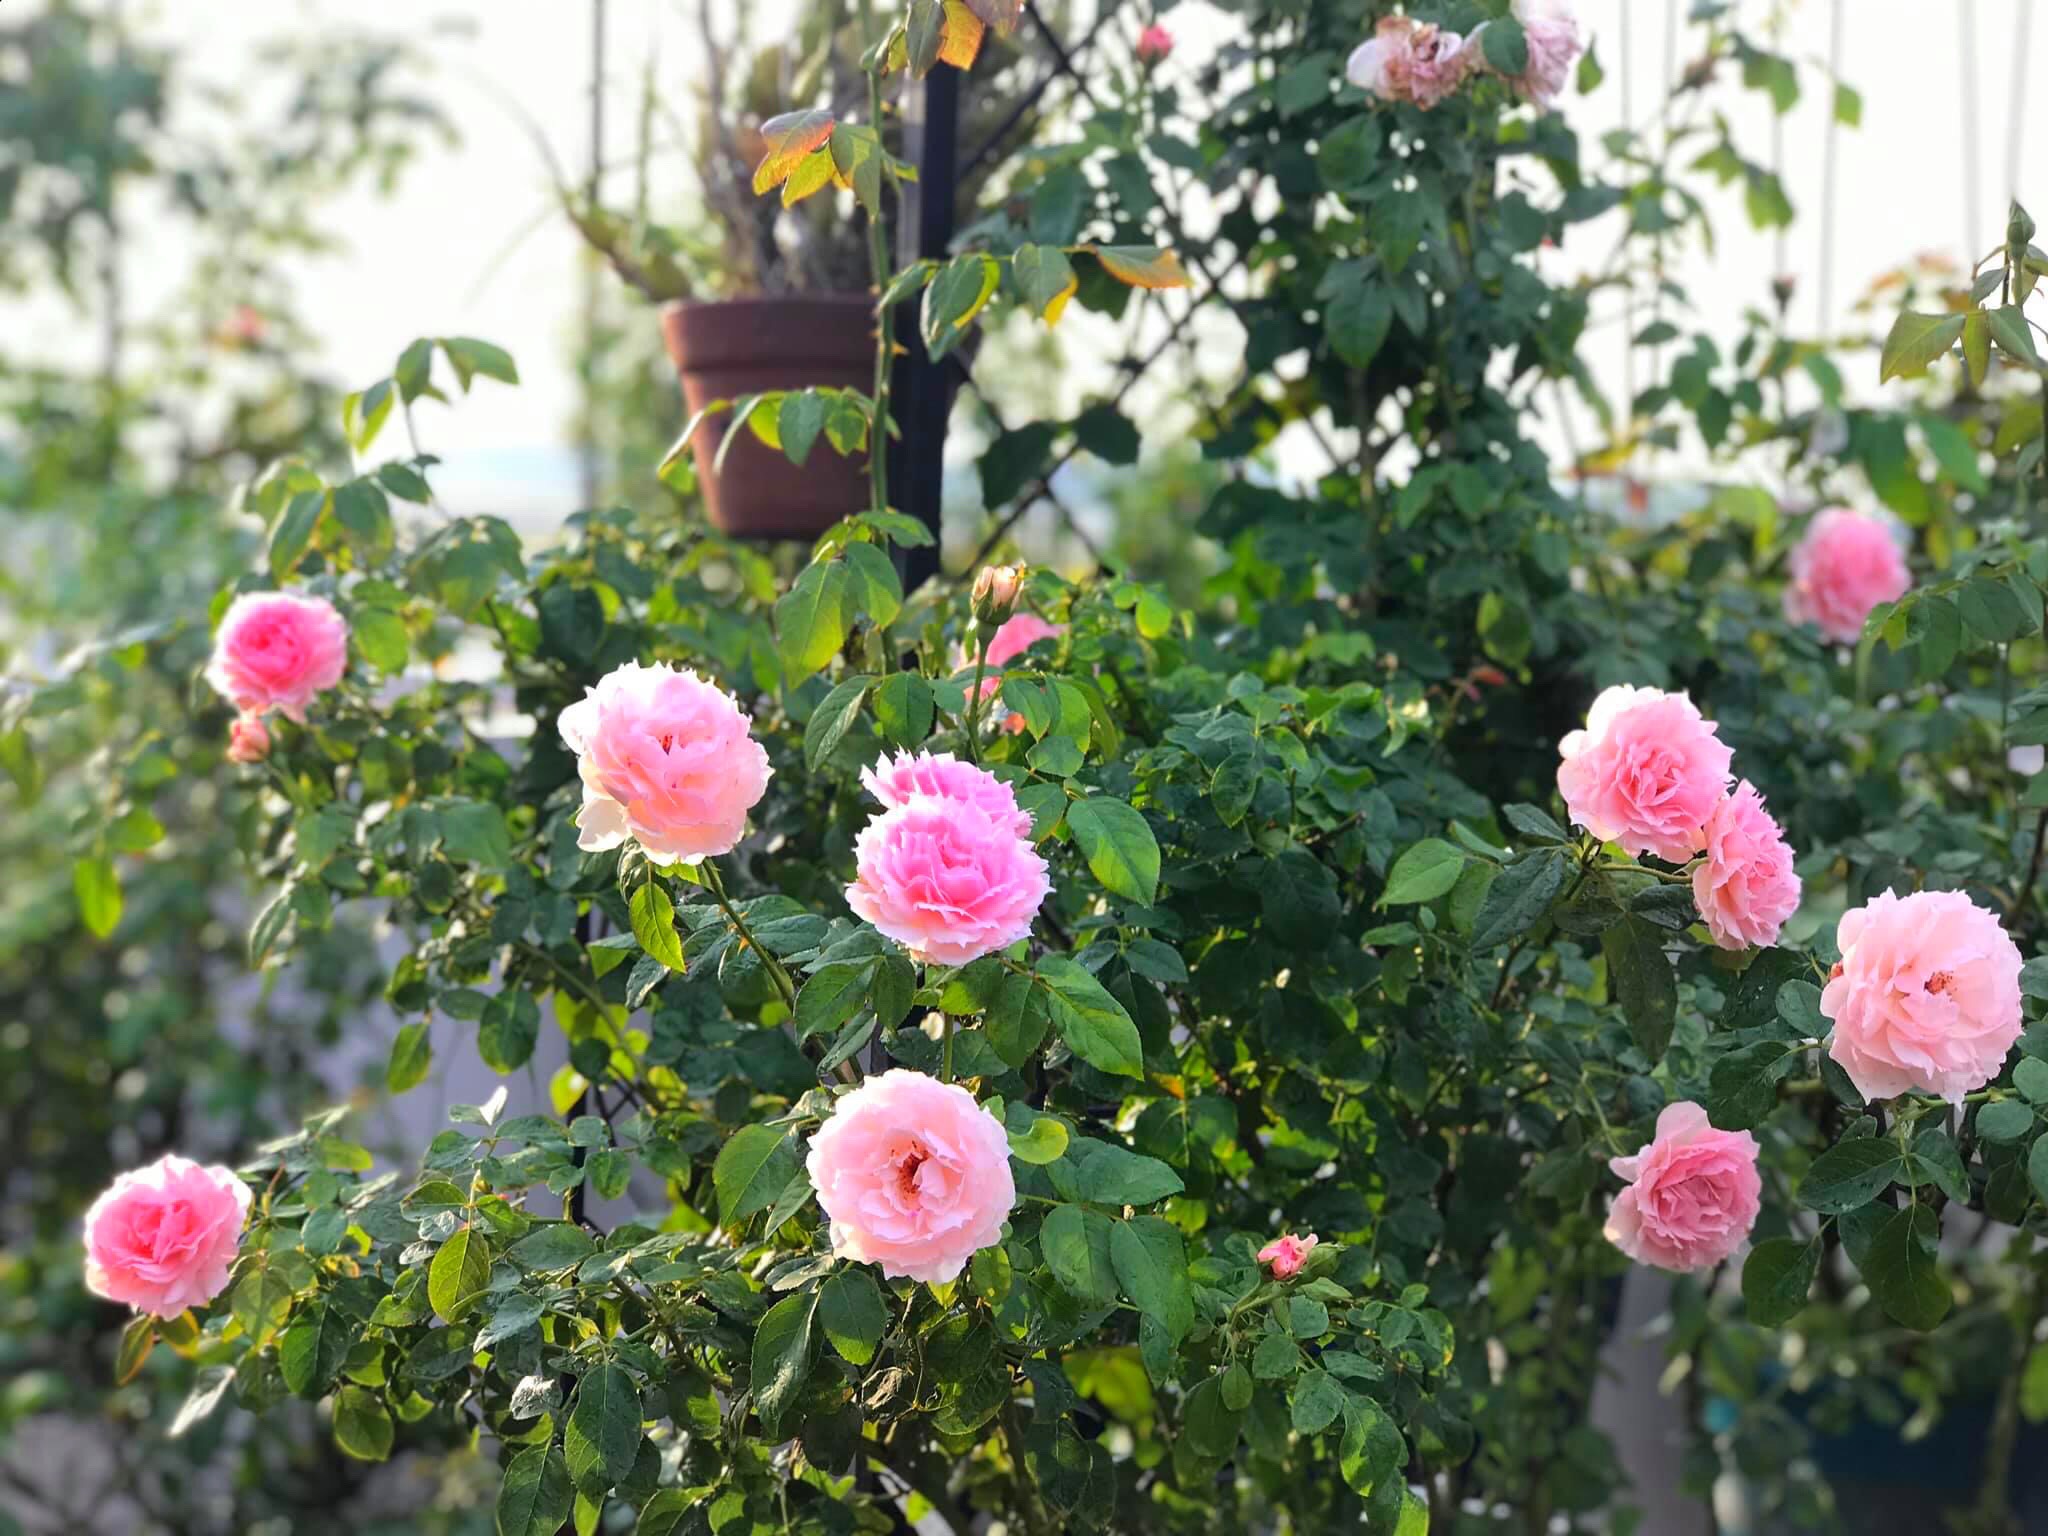 Ngày 20/11 ghé thăm vườn hồng ngát hương dịu dàng khoe sắc trên sân thượng của cô giáo dạy Văn ở Nha Trang - Ảnh 20.